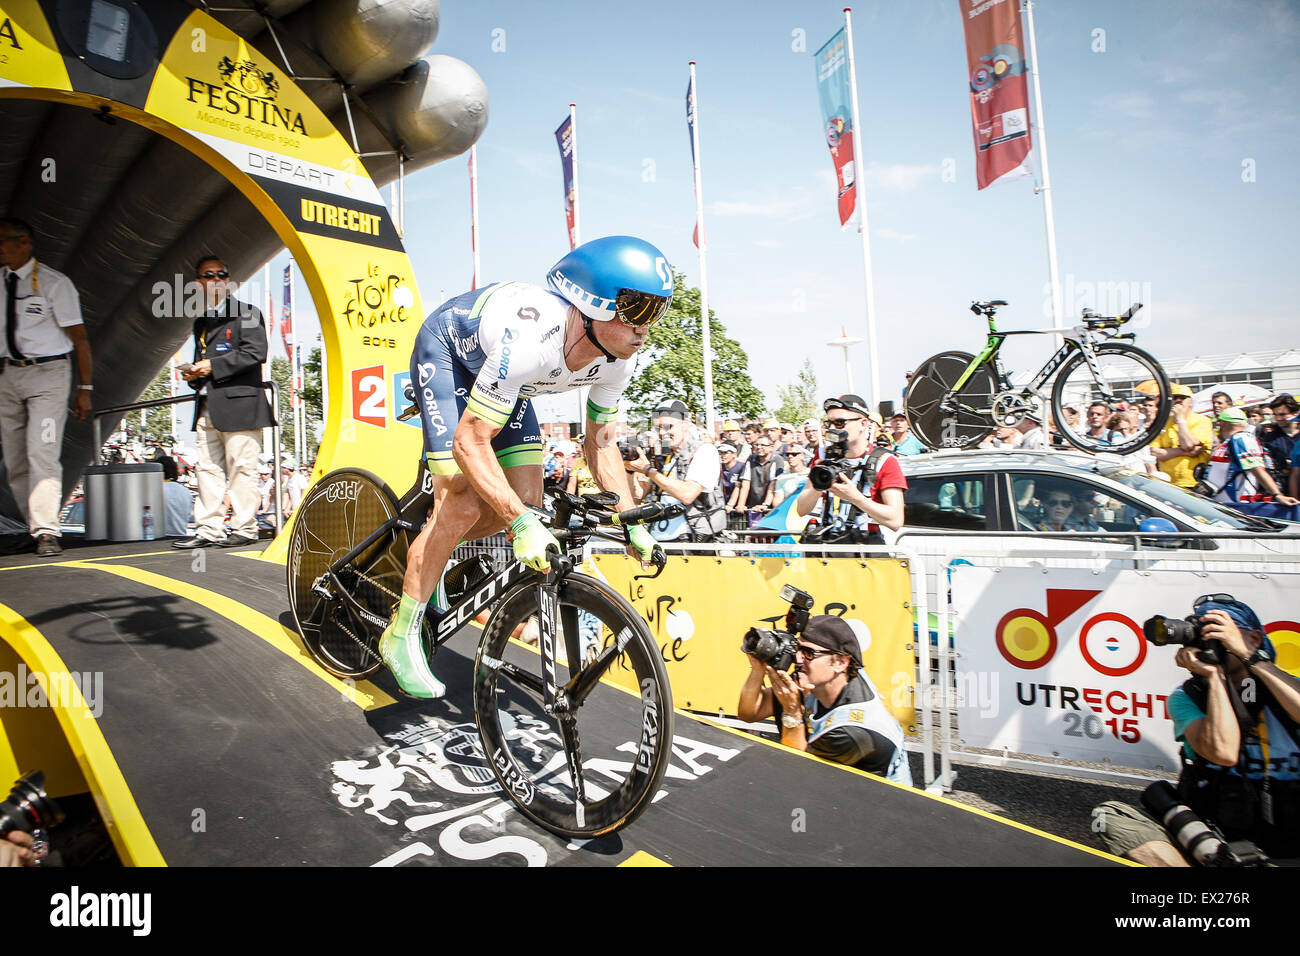 Utrecht, Países Bajos. El 4 de julio de 2015. Tour de Francia etapa contrarreloj, Simon GERRANS, equipo Orica verde al borde de crédito: Jan de Wild/Alamy Live News Foto de stock